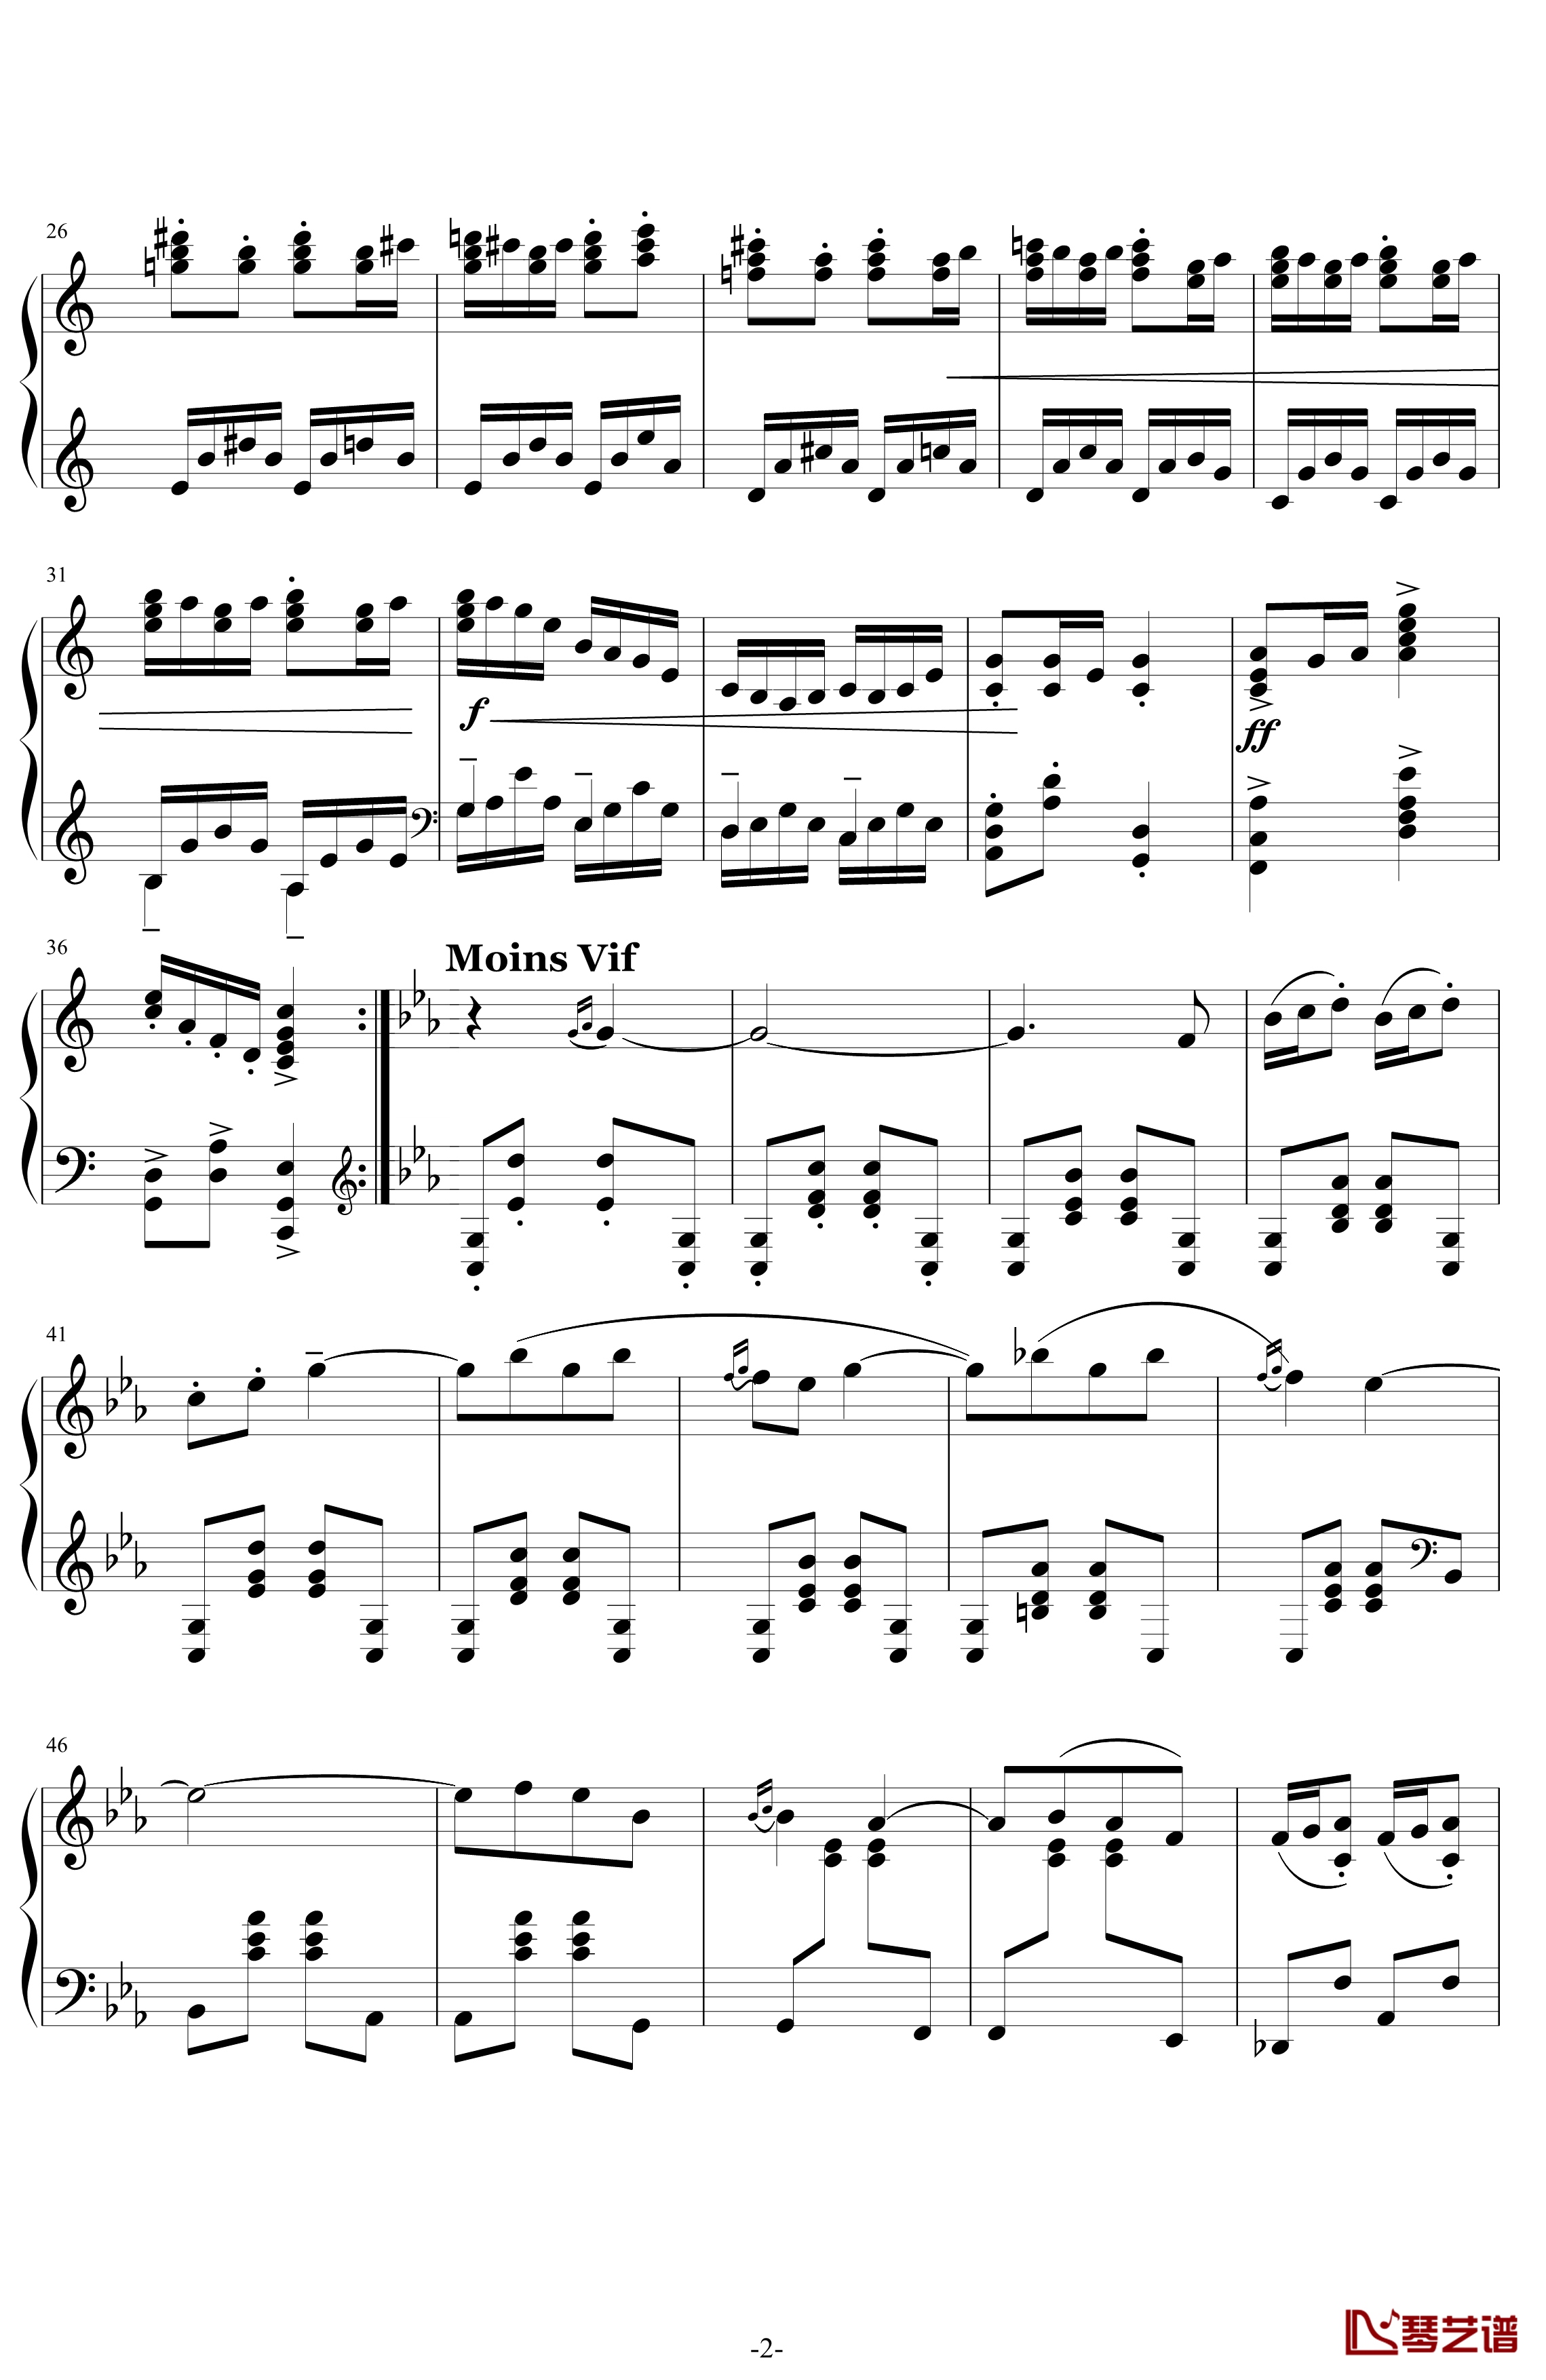 利戈顿舞曲钢琴谱-选自《库普兰之墓》-拉威尔-Ravel2